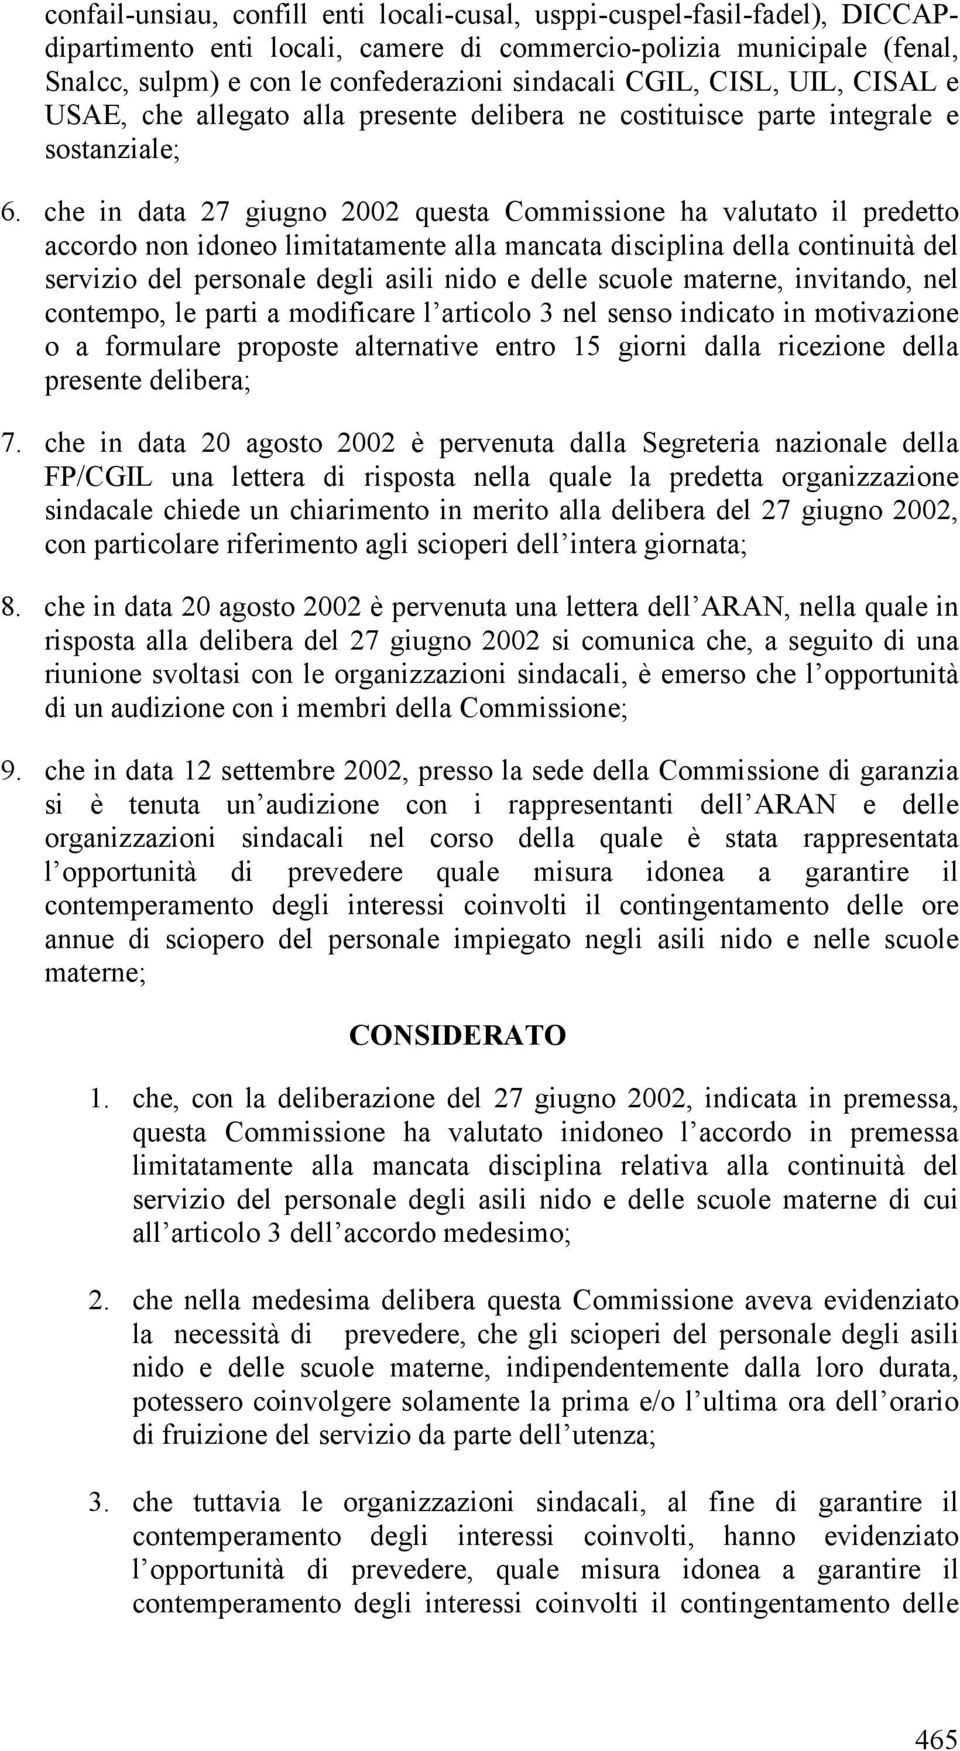 che in data 27 giugno 2002 questa Commissione ha valutato il predetto accordo non idoneo limitatamente alla mancata disciplina della continuità del servizio del personale degli asili nido e delle